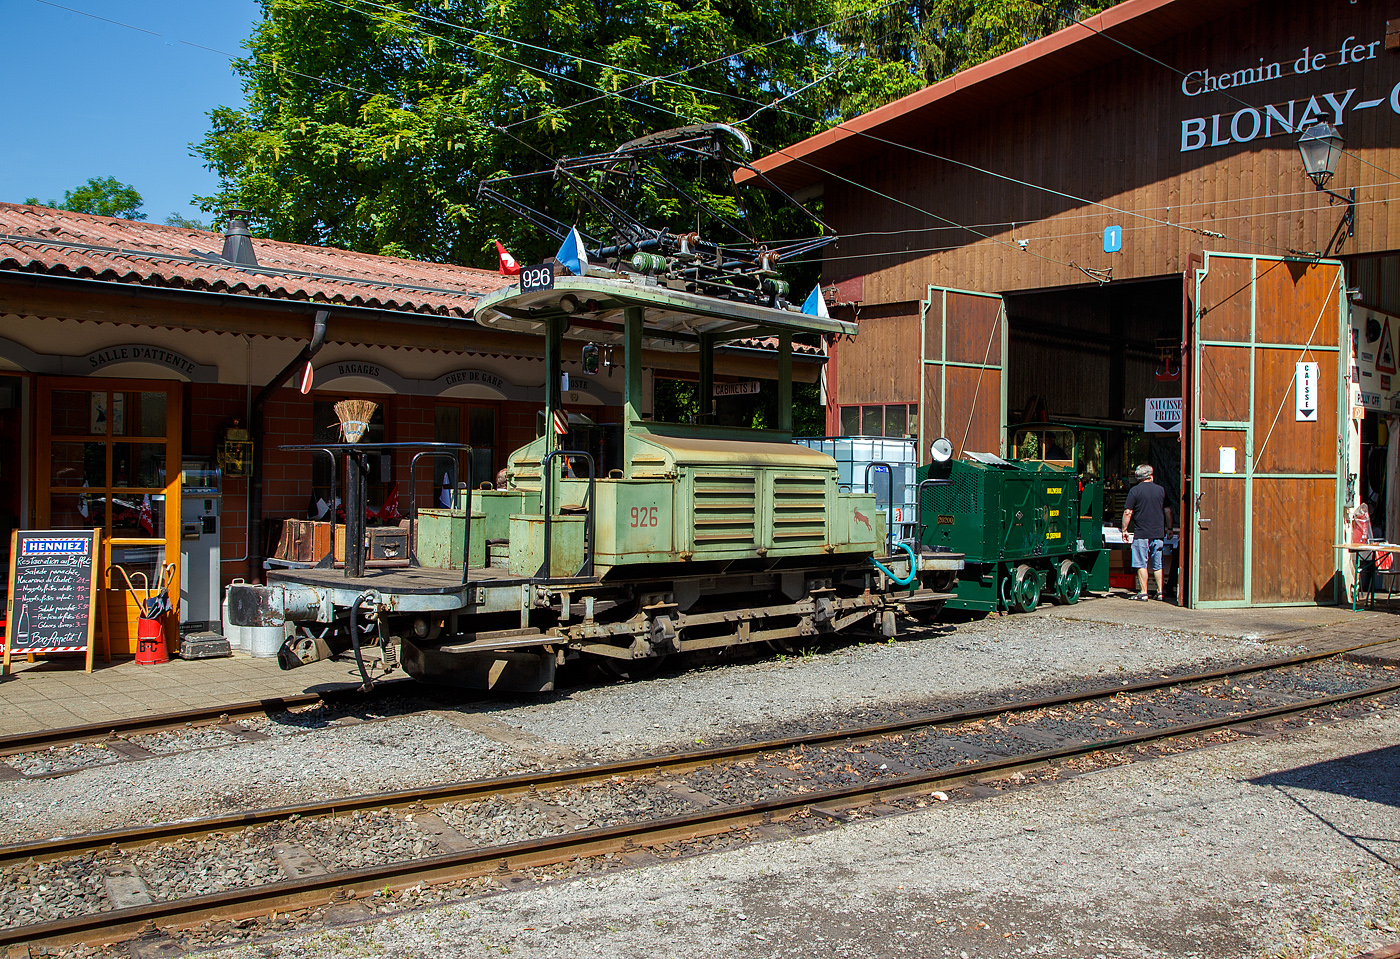 Mit einem 1m³-Wassertank und einer Motorspritze ausgestatte, als Löschzug, der Te 2/2 926 der Museumsbahn Blonay-Chamby, ex VBZ (Verkehrsbetriebe Zürich) Schienentraktor Xe 2/2 – 1926, ex Xe 2/2 – 926, ex StStZ Xe 2/2 – 926, der Museumsbahn Blonay-Chamby am 27.05.2023 im Museum Chaulin. Dahinter der kleine ex MOB Schienentraktor Tm 2/2 Nr. 1, ex Holzwerk Rieder, der Museumsbahn.

Der Te 2/2 Schienentraktor wurde 1935 von der damaligen Städtische Straßenbahn Zürich (StStZ) selbst gebaut, der elektrische Teil ist von der Maschinenfabrik Oerlikon (MFO). Gebaut worden sind, zwische1930 und 1935, drei dieser Rangiermaschinen Nr. 924-926 (ab 1946 in Nr. 1924 bis1926), dabei wurden Untergestell, Elektrik und Motoren von Ce 2/2 Triebwagen der Serie 57-84 (mit markantem Peckham-Untergestell) verwendet. 

Die drei Manövrierwagen von erhielten zur Erleichterung der Fahrtrichtungswechsel von Anfang an einen Pantografen statt des umständlichen Lyrabügels. Die Rangierer fügten in den Depots den Triebwagen für die Hauptverkehrszeit die Beiwagen zu. Die Führerstände waren längs eingebaut, mit freier Sicht auf die Kupplungen, so konnte man mit ihnen sozusagen millimetergenau anfahren. Ihr grüner Anstrich und das charakteristische Fahrverhalten trugen ihnen den Spitznamen „Laubfrosch“ ein.

Speziell für Zürich war die große Flotte von Rangierfahrzeugen. Diese hatten die Aufgabe, für die Stoßzeit Verstärkungswagen beizustellen und danach wieder von den Tramzügen abzuziehen. Dazu gehörten auch Fahrten zwischen dem zugeteilten Depot und den Bereitstellungsgleisen an Wendeschleifen. Ende der 1960ziger Jahre wurde, durch die große Zahl angeschafften Mirage-Gelenkzüge, die Flotte von 24 Stück Rangierfahrzeugen überflüssig. Das Beistellen und Abziehen von Tramanhängern vor und nach der Stoßzeit war nun überflüssig. So war 1969 war ihre Zeit abgelaufen. Während die beiden Xe 2/2 1924 und 1025 Stück abgebrochen wurden, übergab die Stadt Zürich Xe 2/2 1926 an die eben im Aufbau begriffene Museumsbahn Blonay - Chamby BC. Dort leistete das gut unterhaltene und sehr bewegliche Triebfahrzeug wertvolle Dienste bei der Wiederinbetriebnahme der Strecke und beim Bau des Depots. Heute wird der „Laubfrosch“ mit seiner alten Zürcher Nummer 926 bestimmungsgemäß als Rangierfahrzeug auf dem Depotareal der BC benutzt. Hier kann der Laubfrosch seine Stärken ausspielen. Für den Einsatz auf der Museumsbahn musste Xe 2/2 926 die +GF+-Kupplung gegen eine herkömmliche Mittelpufferkupplung tauschen. Um den Betrieb unter der Spannung von 1000 V DB (MOB-GFM) zu ermöglichen, wurde ein zusätzlicher Widerstand montiert, die Straßenbahn Zürich fuhrt ja unter 700 V DC. Trotz der zusätzlichen Widerstände leistet er sehr gute Arbeitet bei der BC. Bei der Museumsbahn Blonay–Chamby tägt der Te 926 nicht den Spitznamen „Laubfrosch“ sondern „Le Bouc“ (Der Bock).

Hier wurde das Fahrzeug präventiv als Löschfahrzeug, für evtl. Bekämpfung von Böschungsbränden nach Funkenwurf durch die Dampflokomotive, vorgehalten. Gelegentlich rückt die BC Xe 2/2 926 mit dem Sprengwagen Xe 2/2 1, ex Straßenbahn Biel aus, der noch nicht wieder mit Fahrmotoren ausgerüstet ist.

TECHNISCHE DATEN:
Spurweite: 1.000 mm (Meterspur)
Gewicht: 9,3 t
Höchstgeschwindigkeit: 36 Km/h
Leistung: 2 x 44 kW = 88 kW (120 PS)
Triebraddurchmesser: 840 mm (neu)
Getriebeübersetzung: 1:4,277
Spannung: (ursprünglich) 700 V DC, bei der BC 1000 V DC

Quellen: BC, Drehscheibe